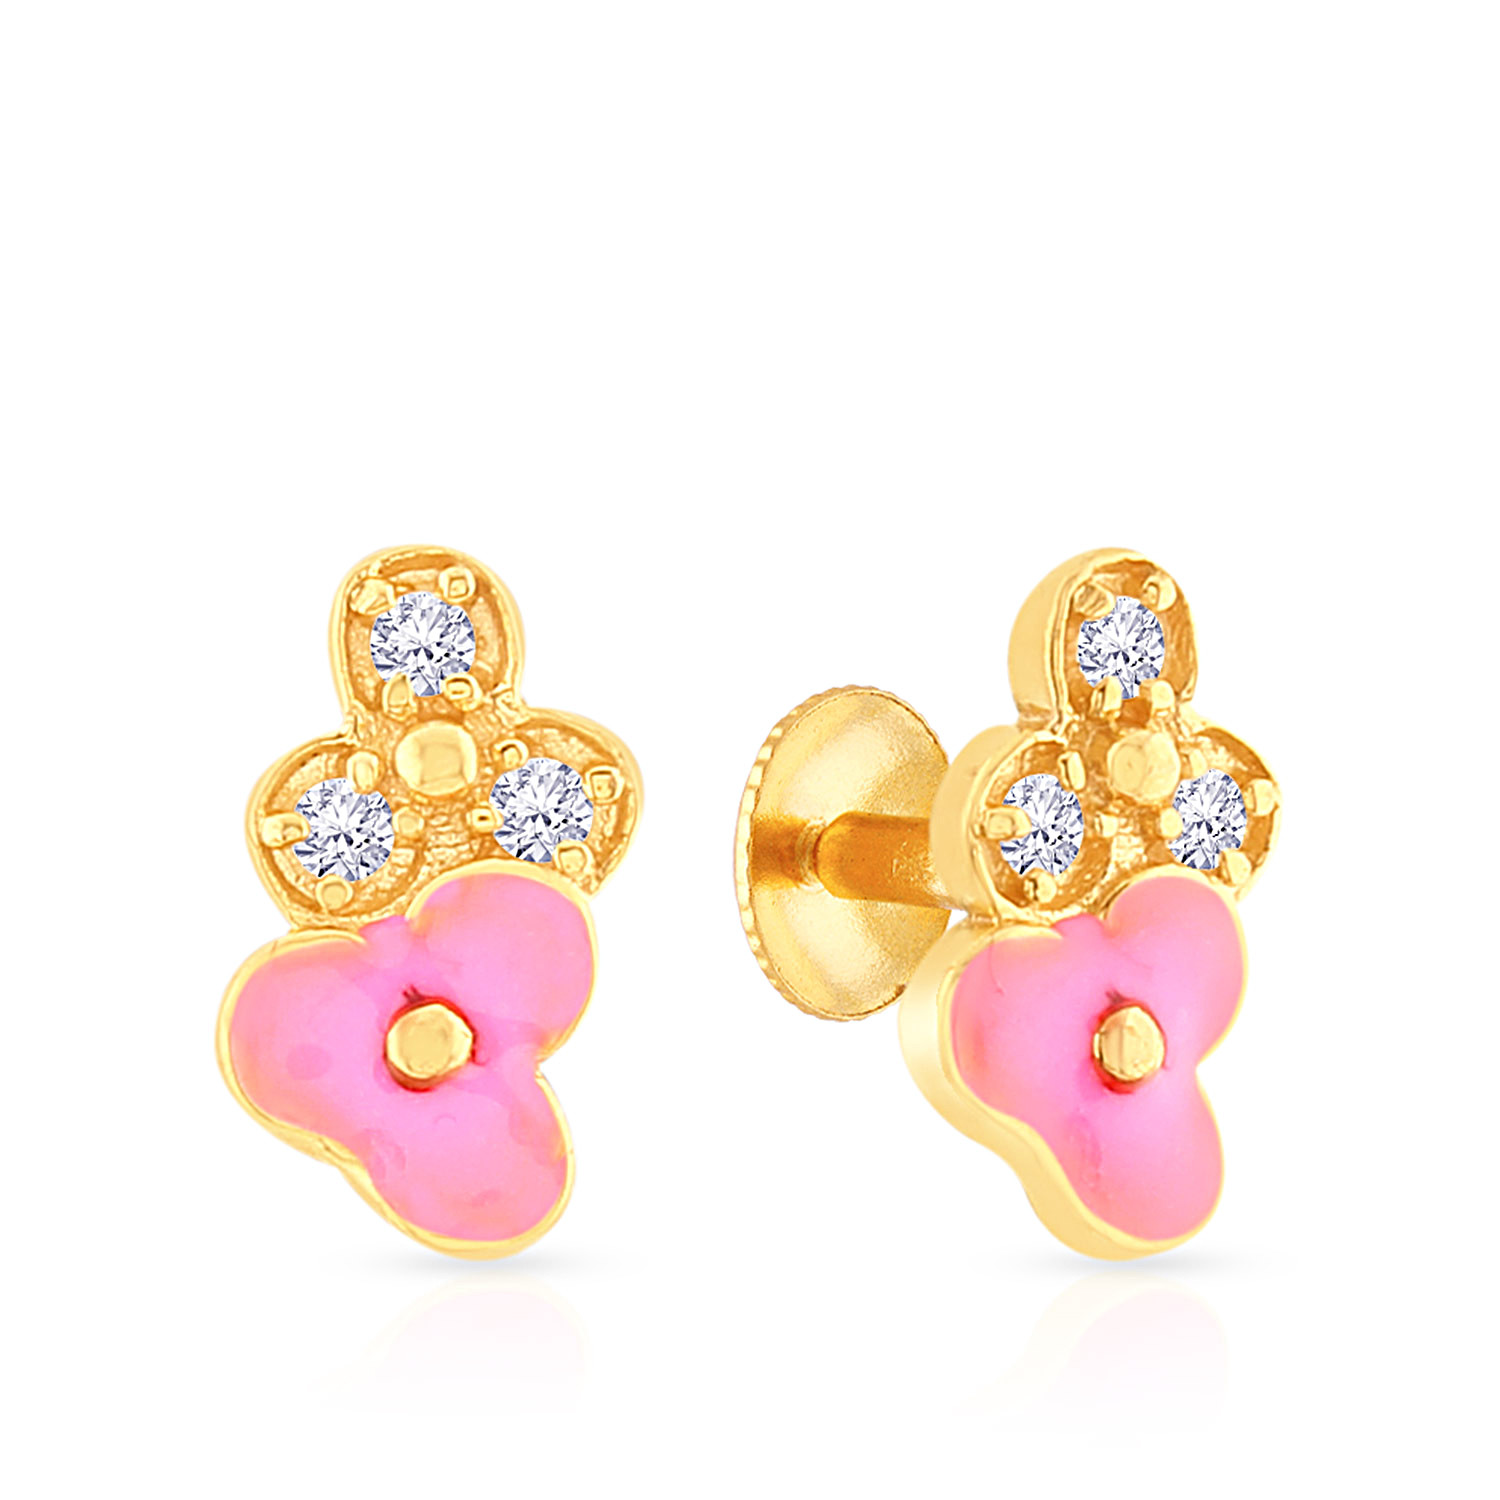 Malabar Gold Designs Earrings Clearance  wwwsaraswathyreddymatrimonycom  1696232172